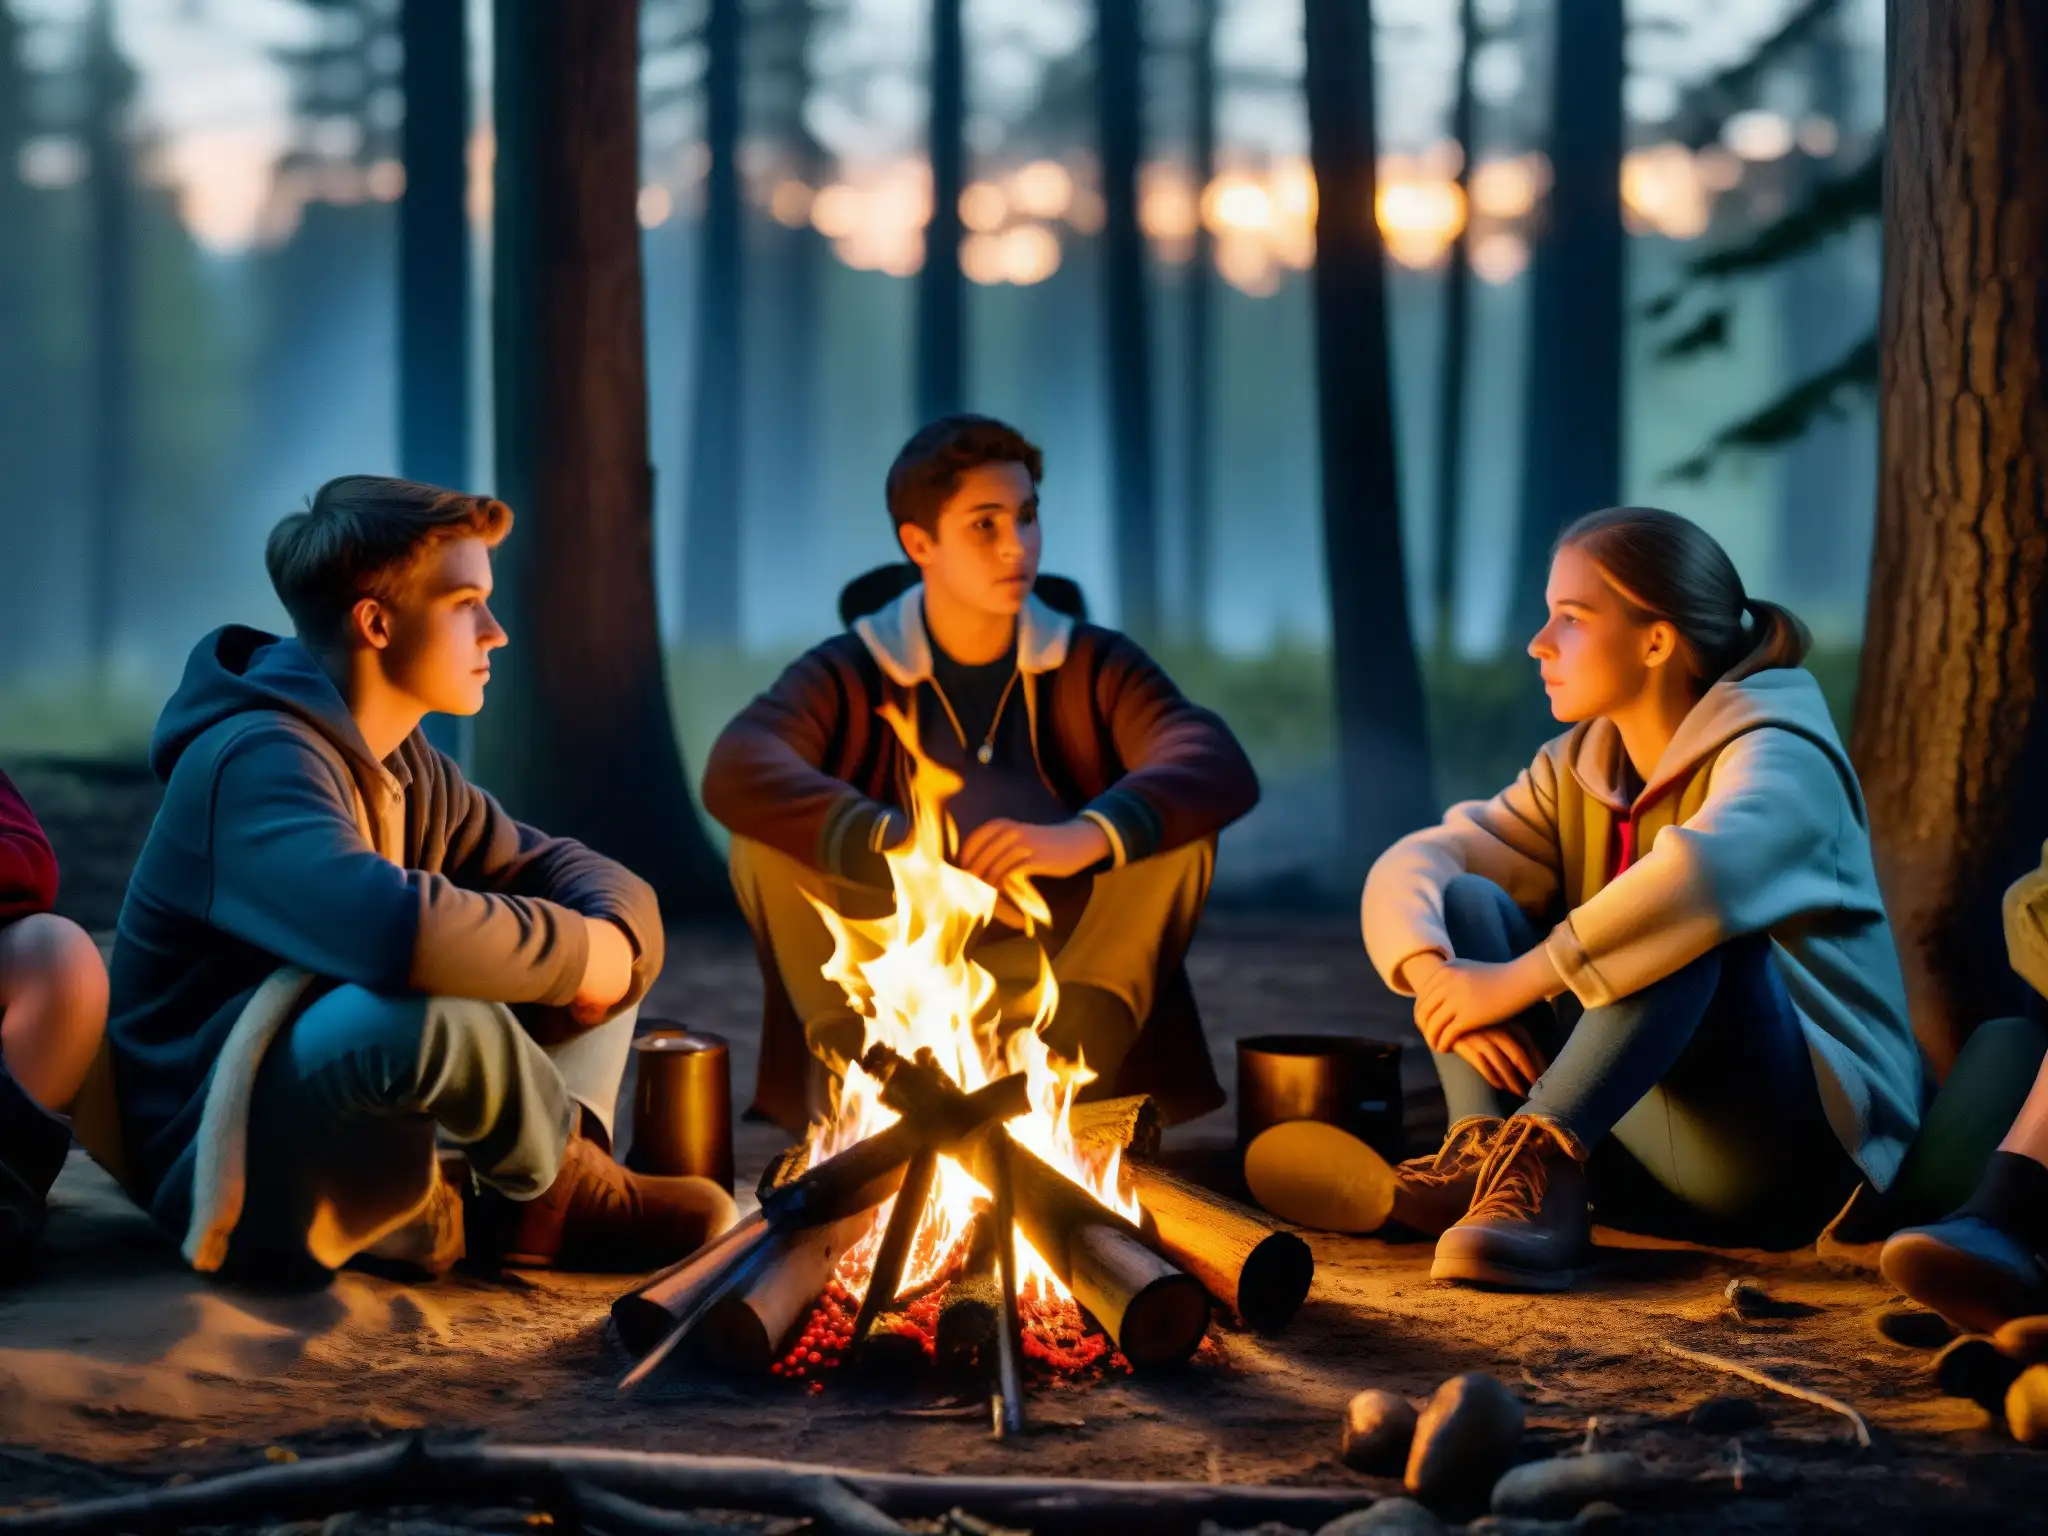 Un grupo de adolescentes se reúne alrededor de una fogata en el bosque, mientras uno de ellos cuenta una historia escalofriante